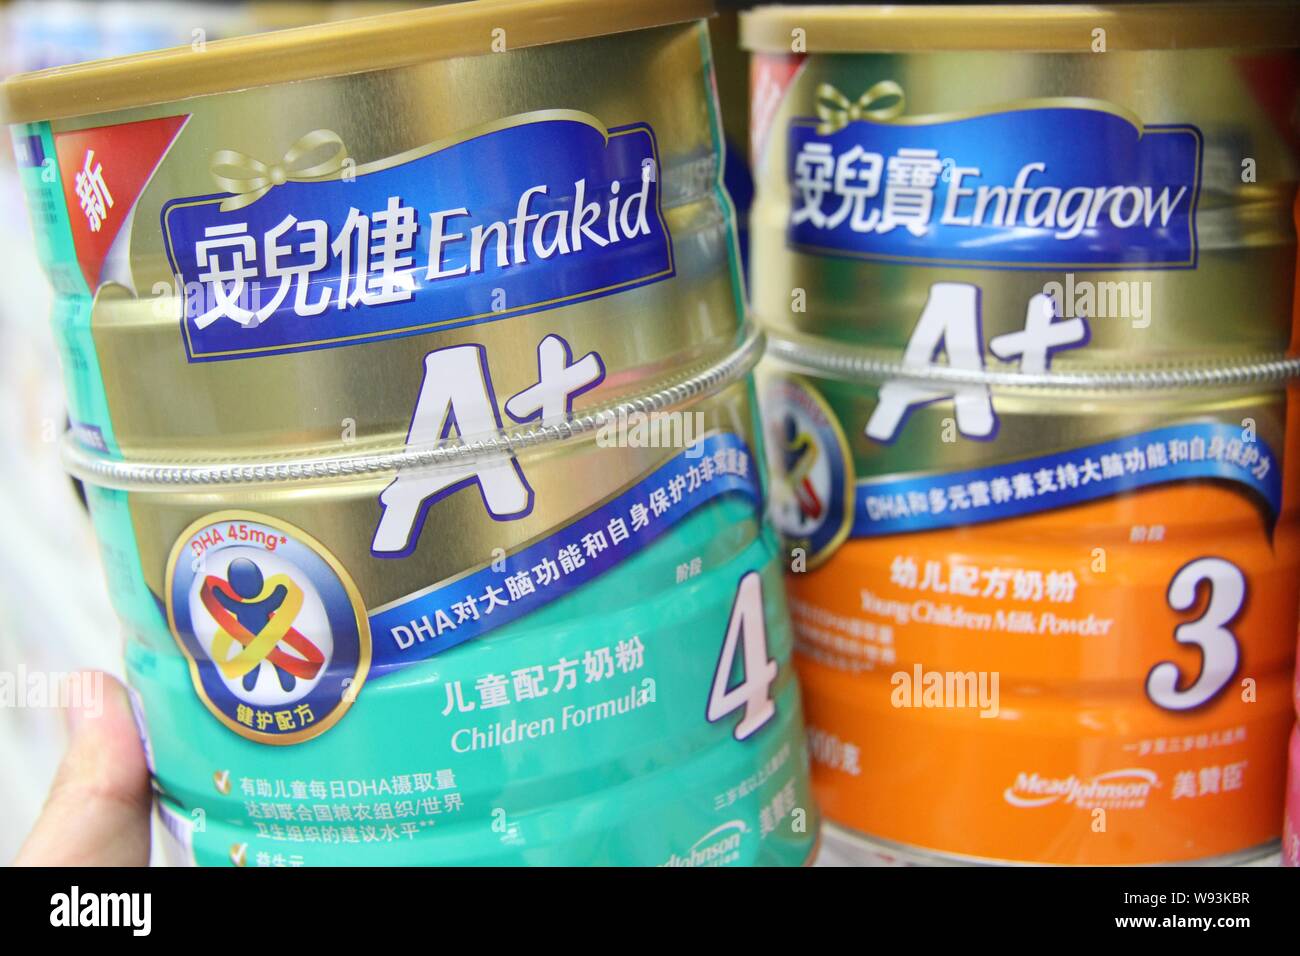 Archivo-latas de fórmula infantil Enfagrow Enfakid y de Mead Johnson están  a la venta en un supermercado en la ciudad de Nantong, provincia de  Jiangsu, Chinas oriental 12 Fotografía de stock -